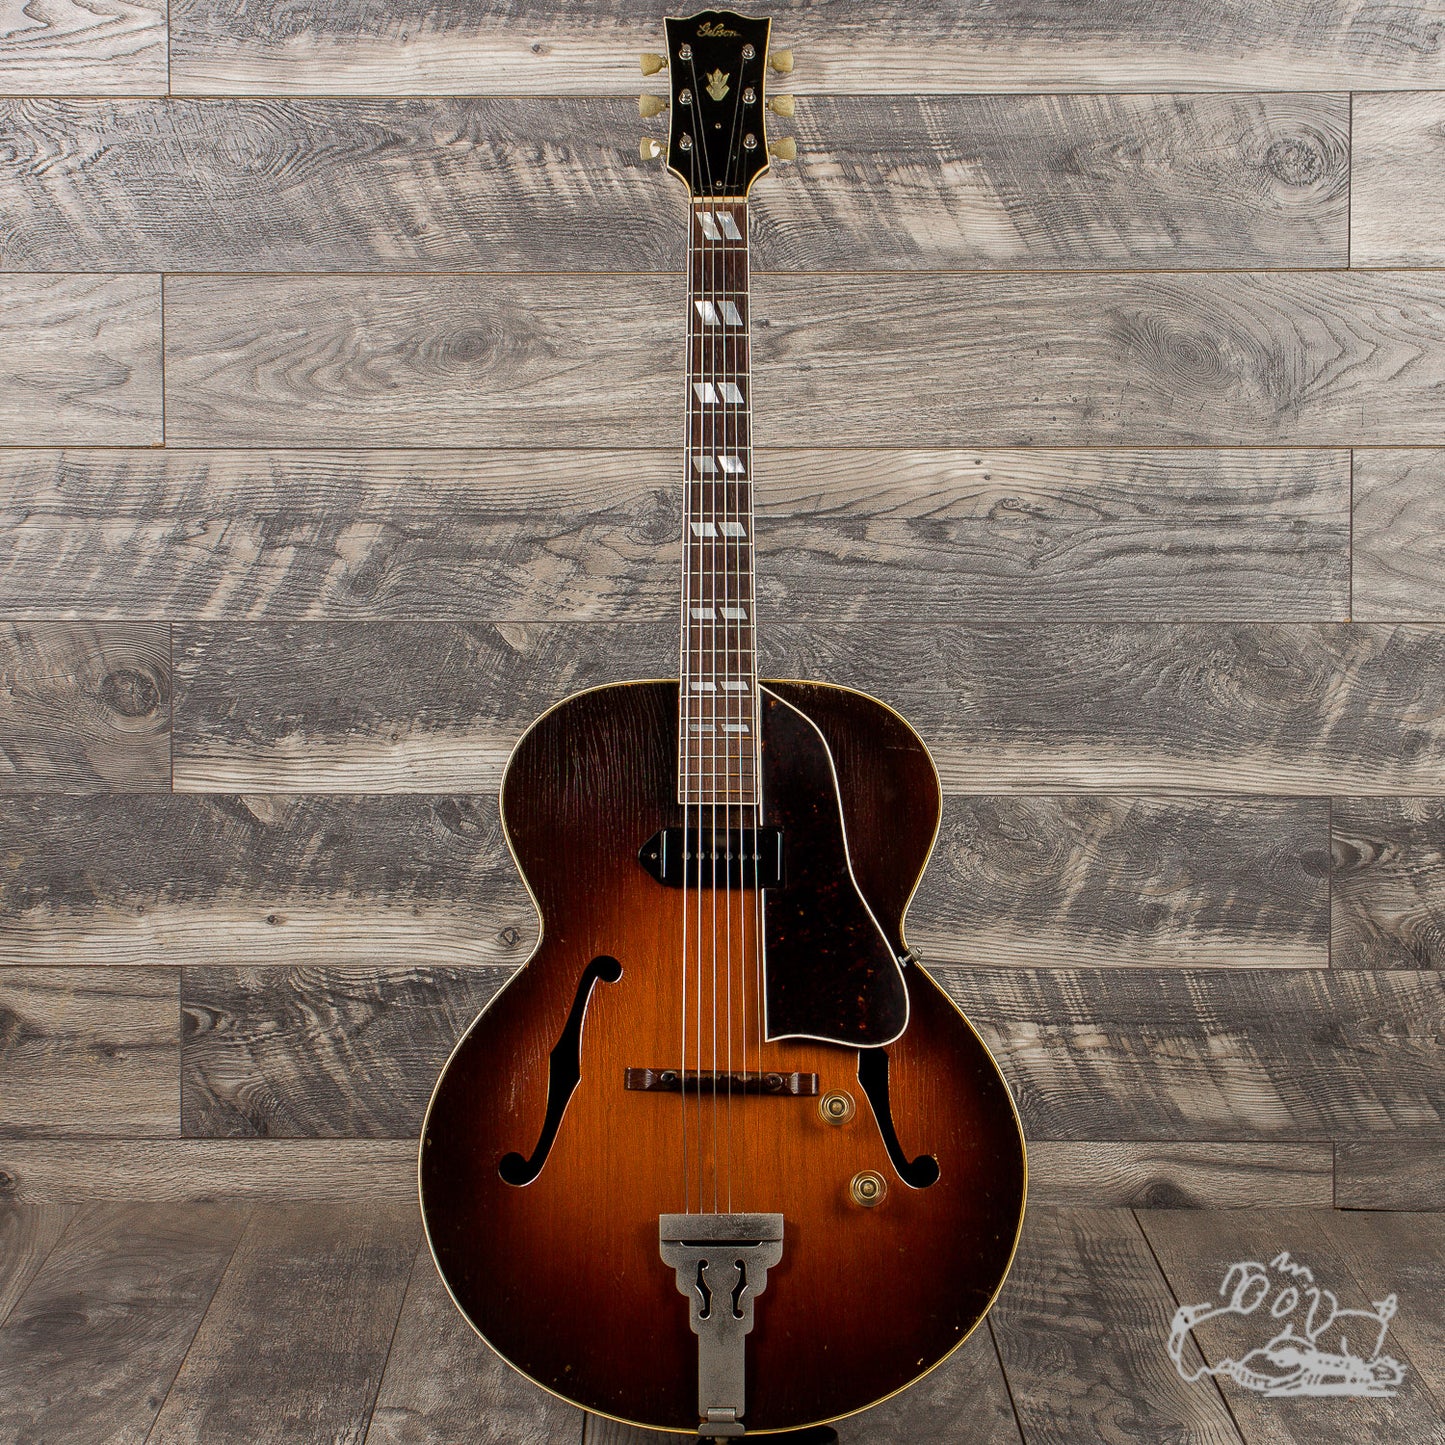 1946 Gibson ES-300